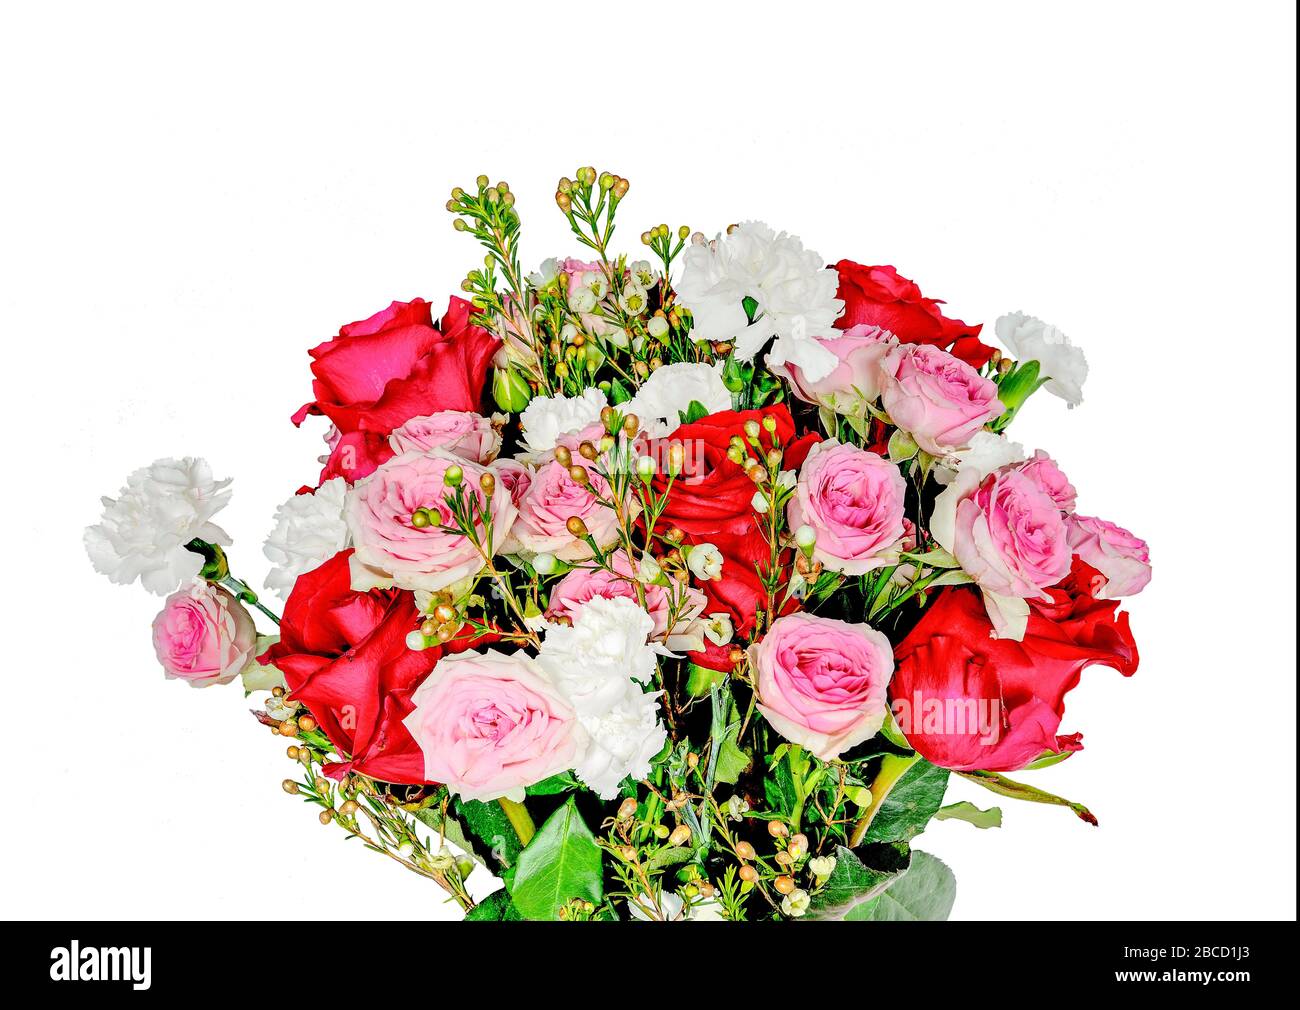 Blumenstrauß mit sanften rosa und roten Rosen und weißen Kornationsblüten isoliert auf weißem Hintergrund. Blumendesign für jeden Urlaub oder jede Lebensereignis, Festiv Stockfoto